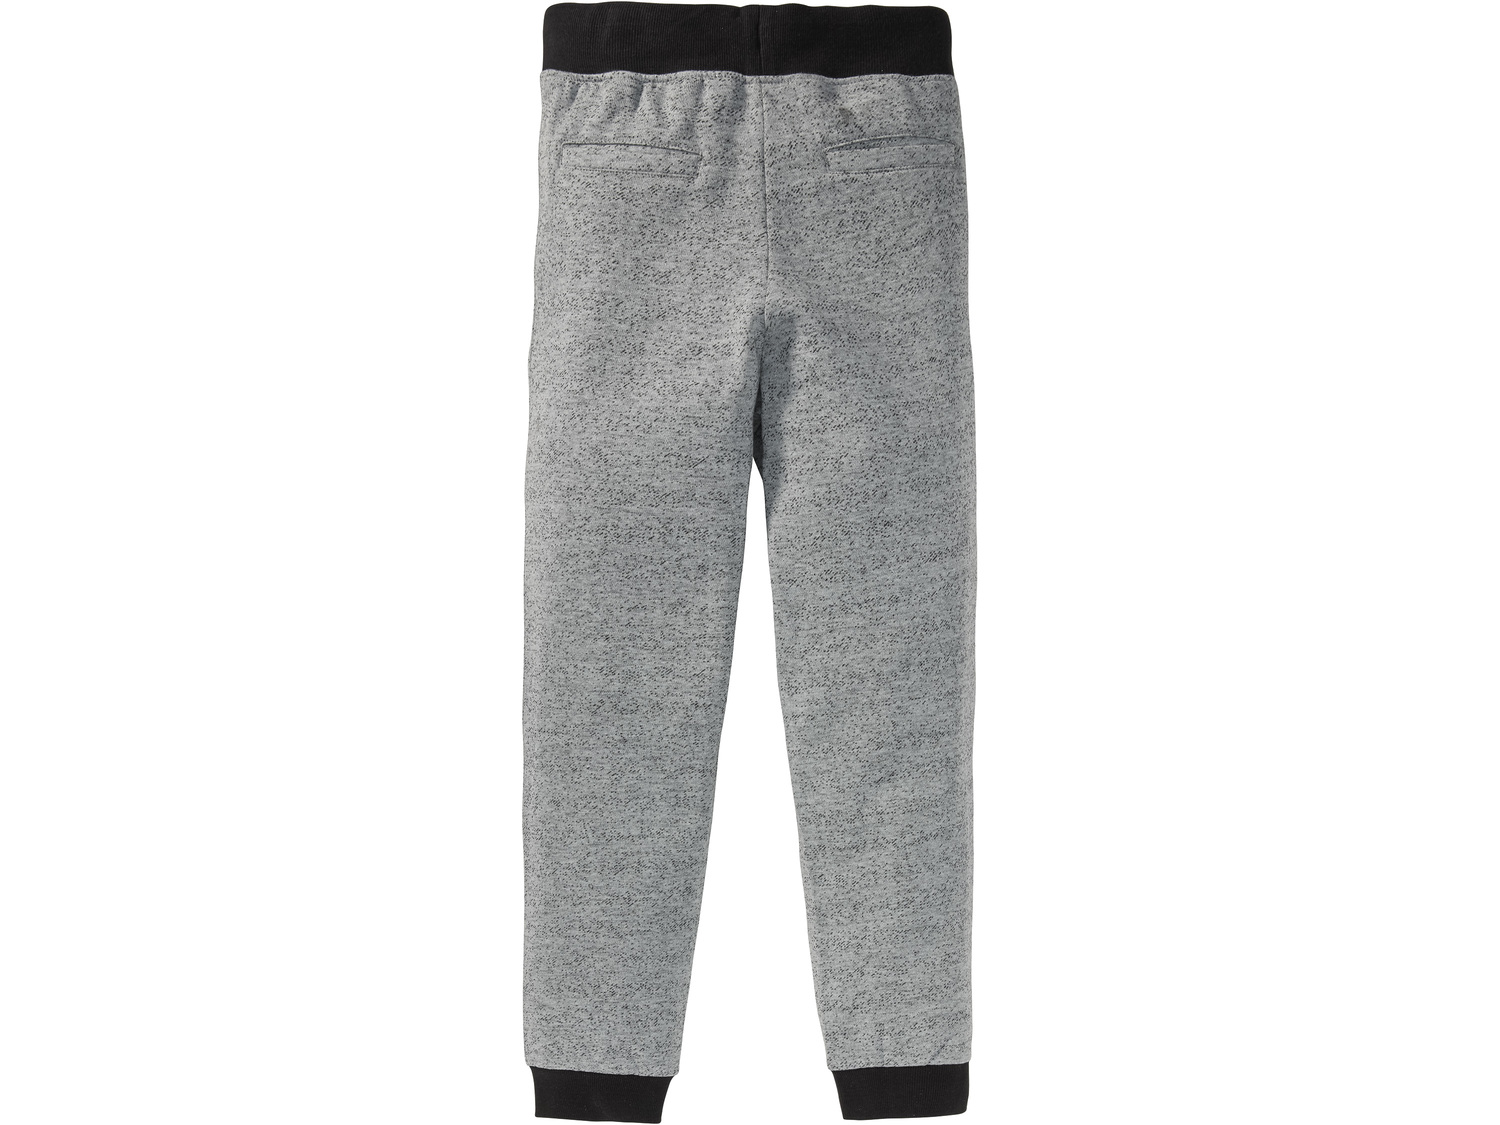 Spodnie dresowe Pepperts, cena 27,99 PLN 
- 90% bawełny, 10% poliestru
- rozmiary: ...